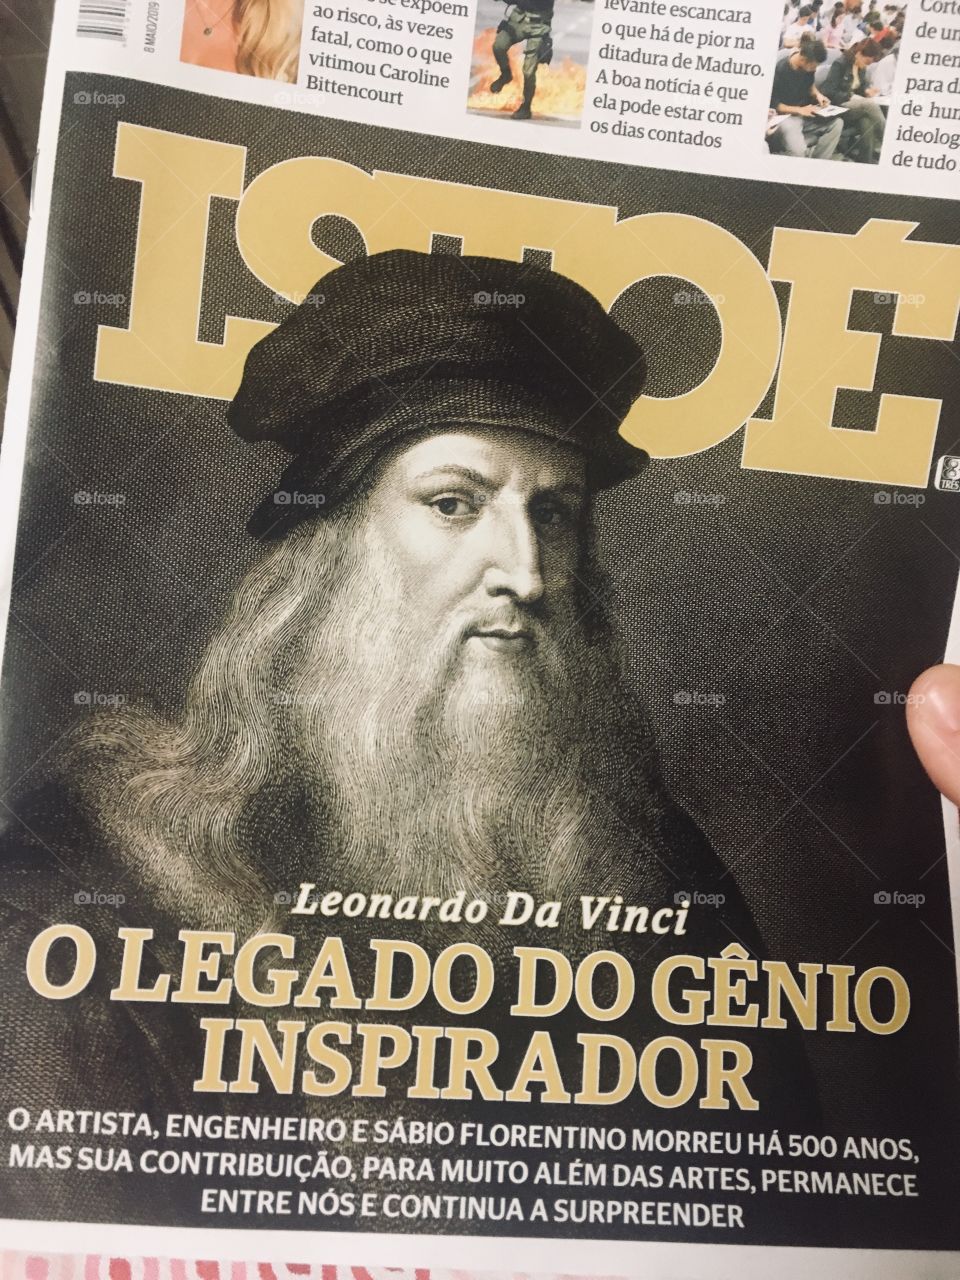 Leonardo da Vinci: um gênio da história da humanidade, celebrado nesta publicação brasileira (Revista Isto É) nos 500 anos da sua morte 